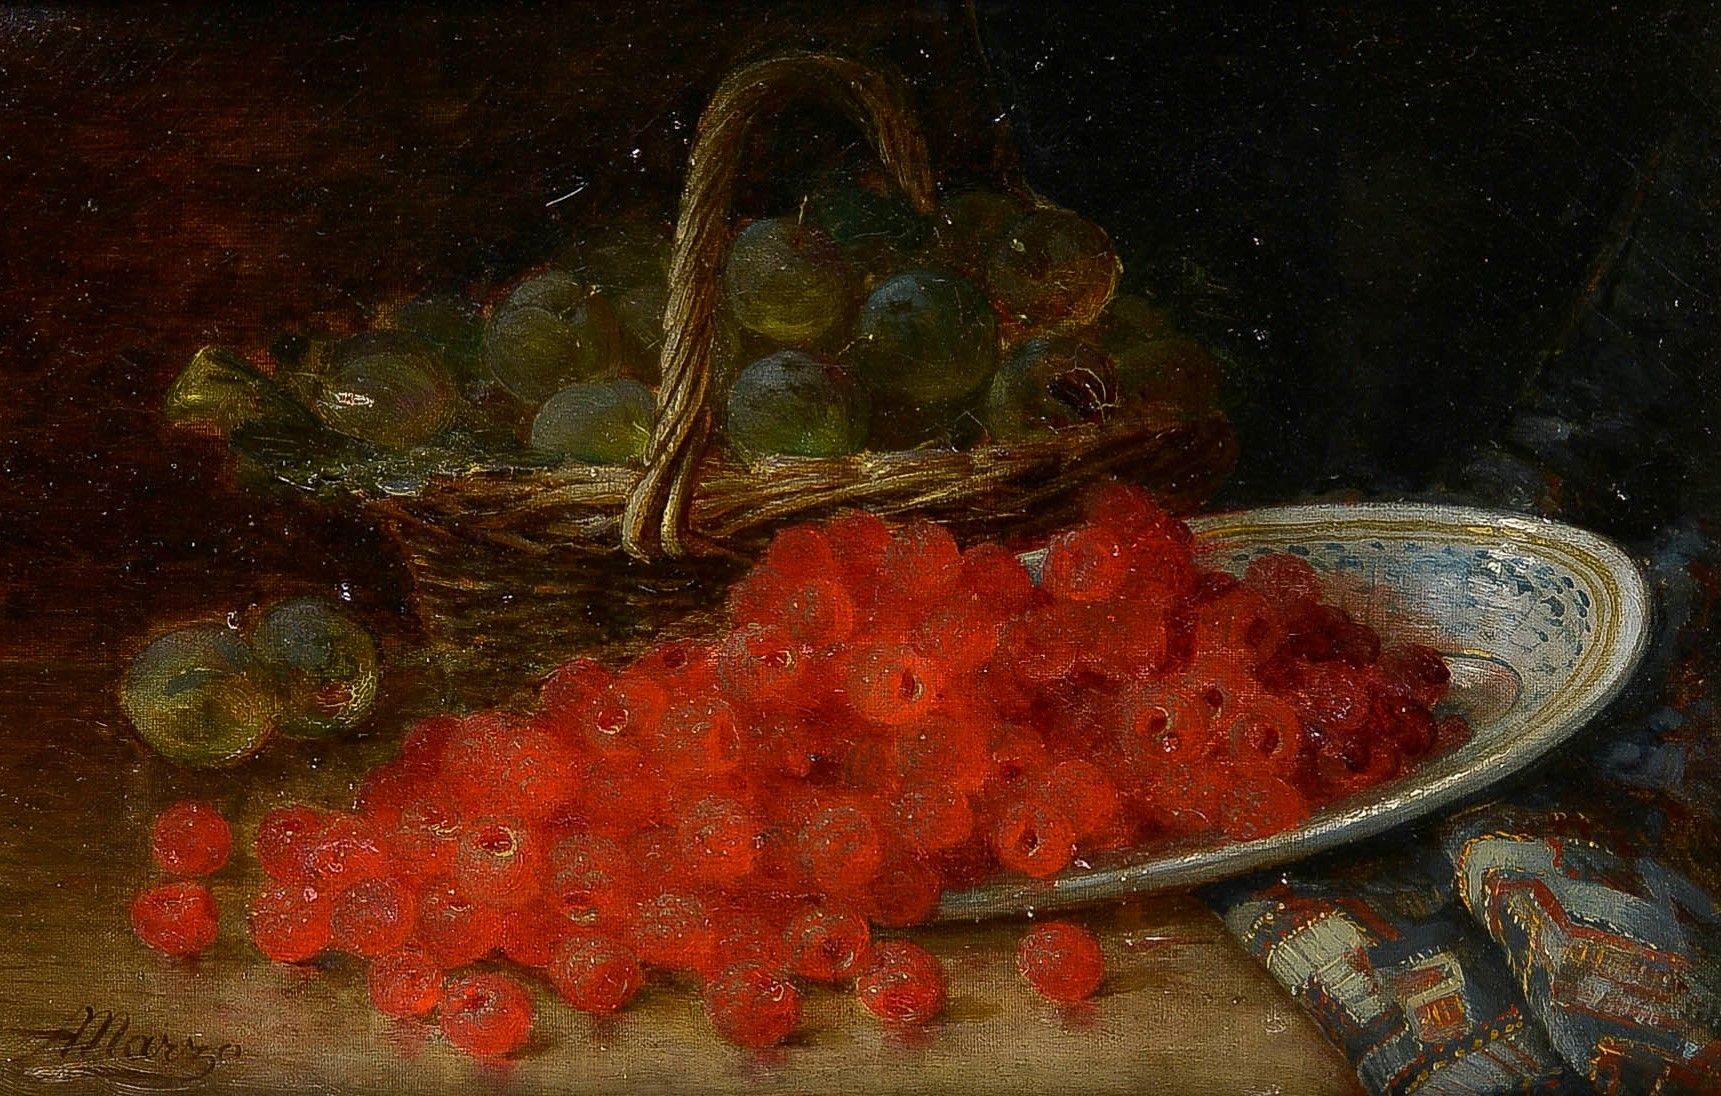 Null 安托万-马尔佐(1852-1935)

树莓和李子

布面油画，左下角有签名

30 x 46 厘米

小事故和一些旧的修复工作